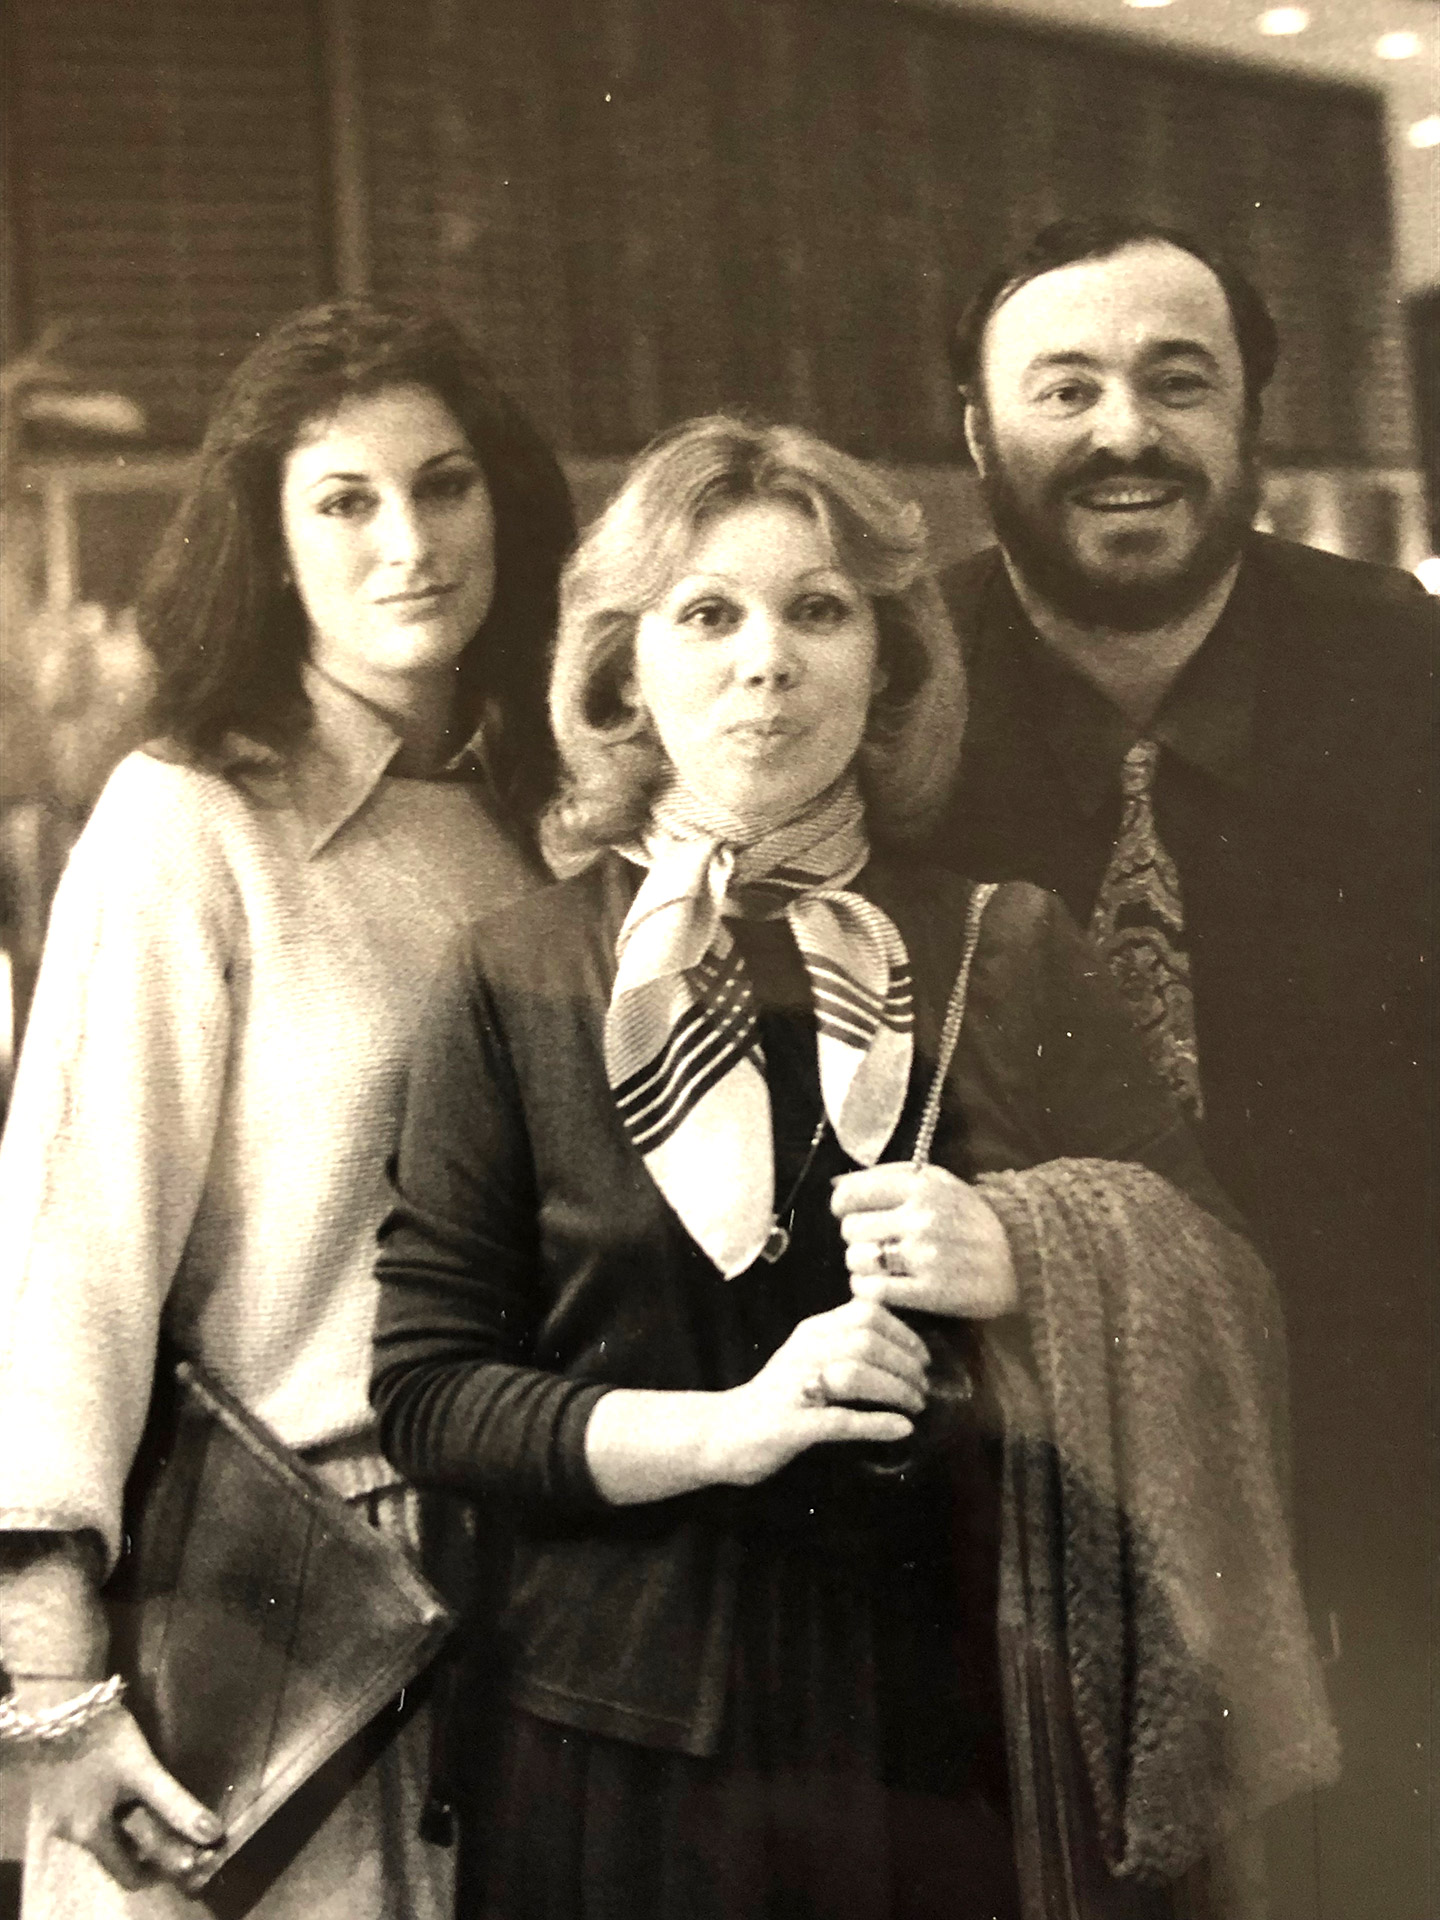 With Luciano Pavarotti and Mirella Freni